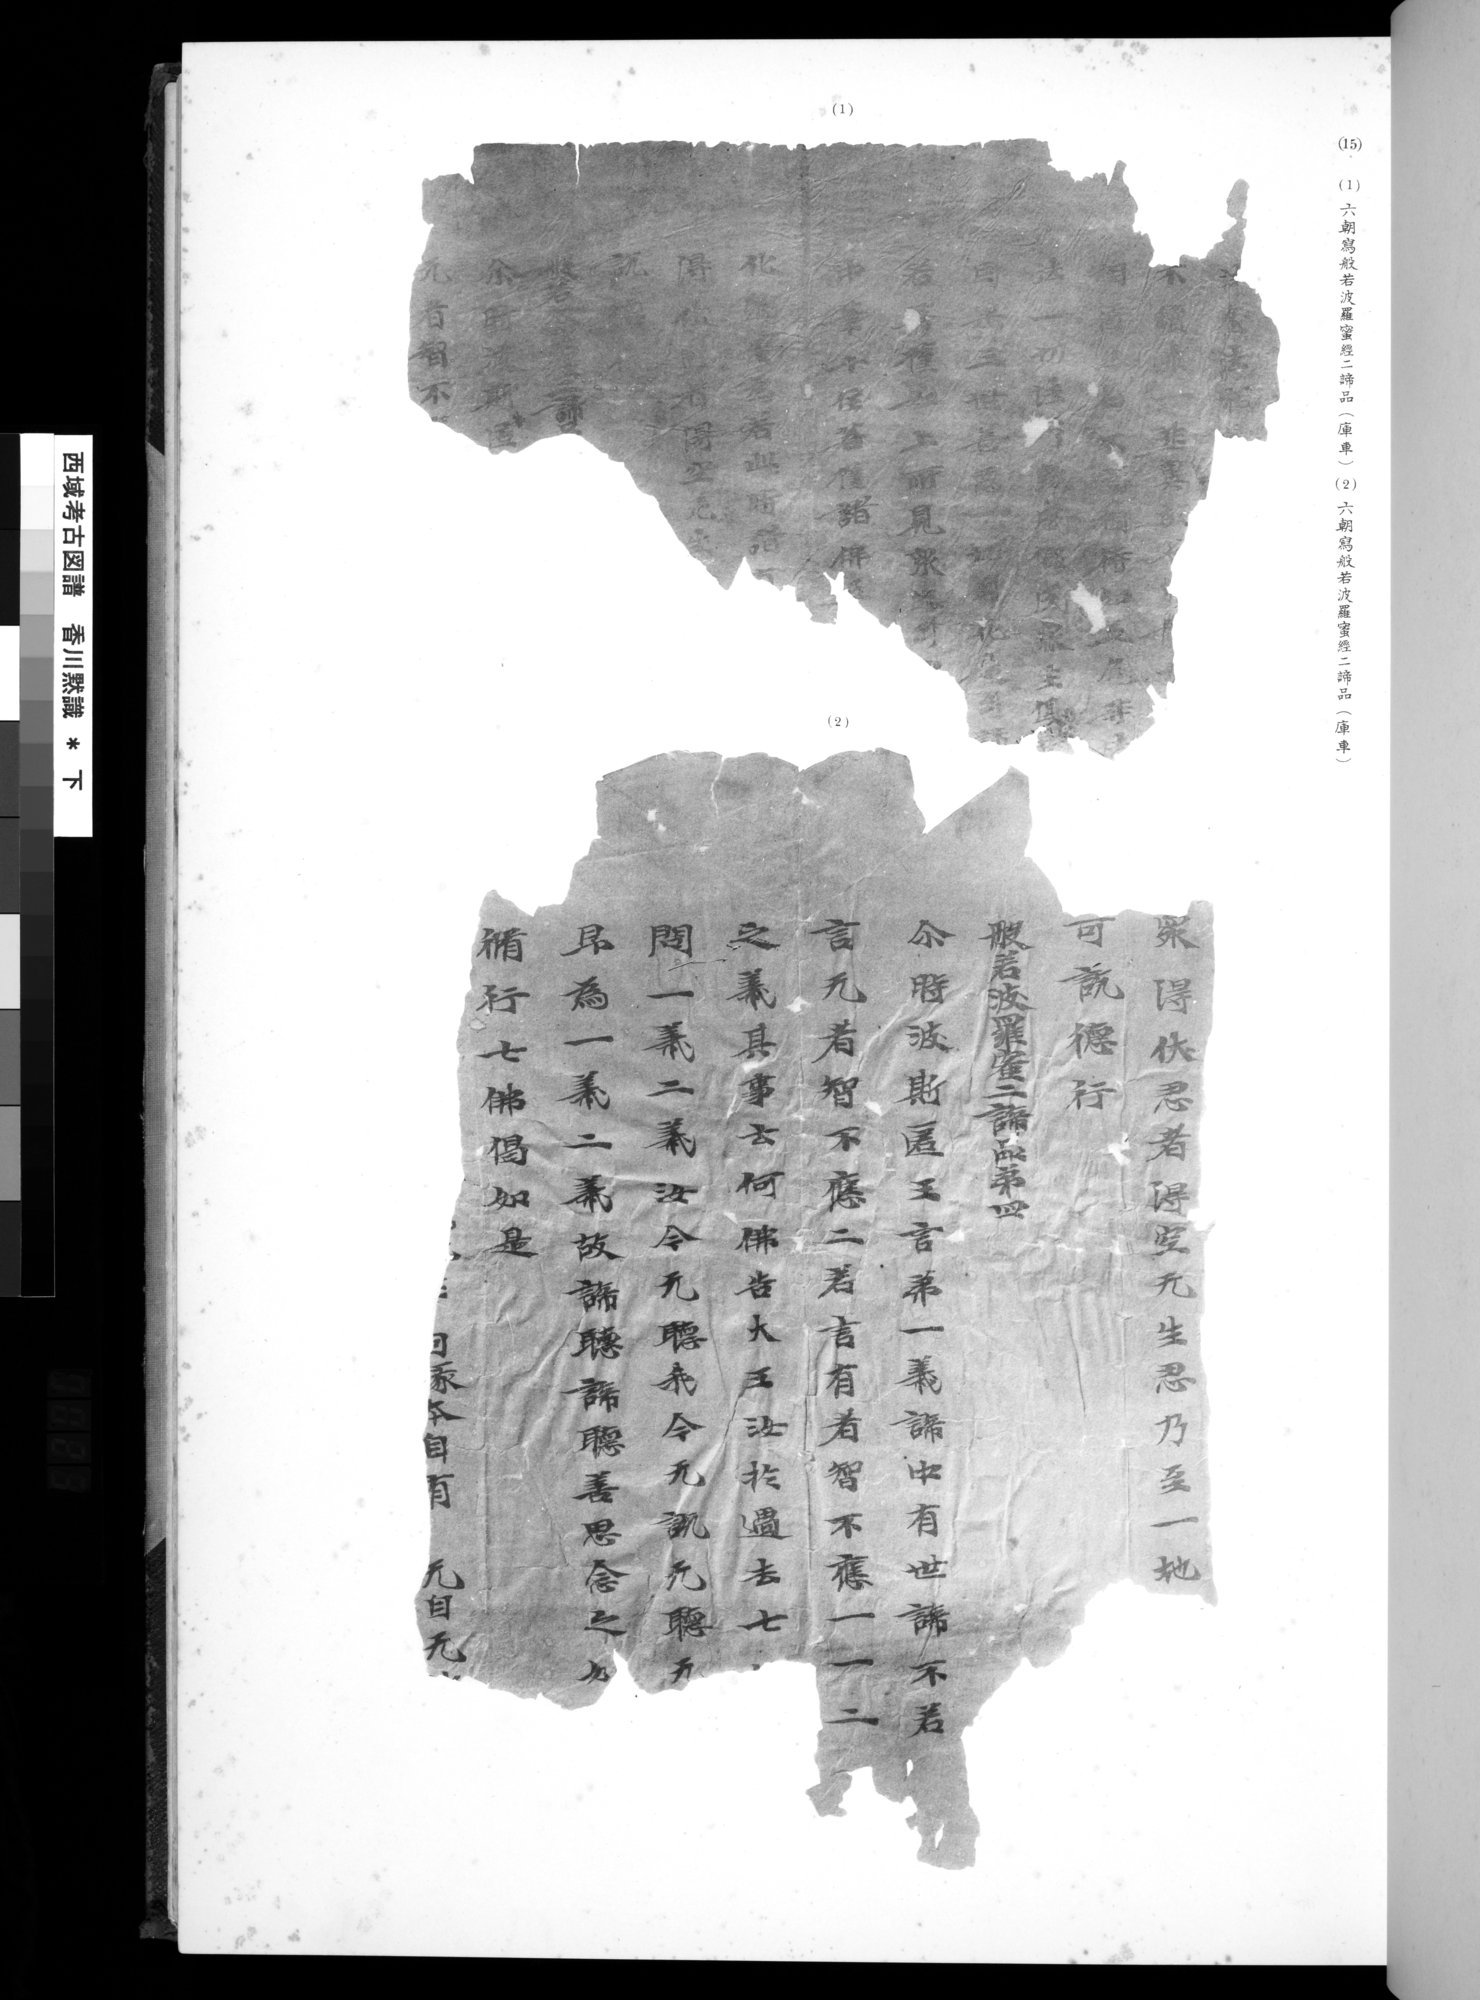 西域考古図譜 : vol.2 / 45 ページ（白黒高解像度画像）